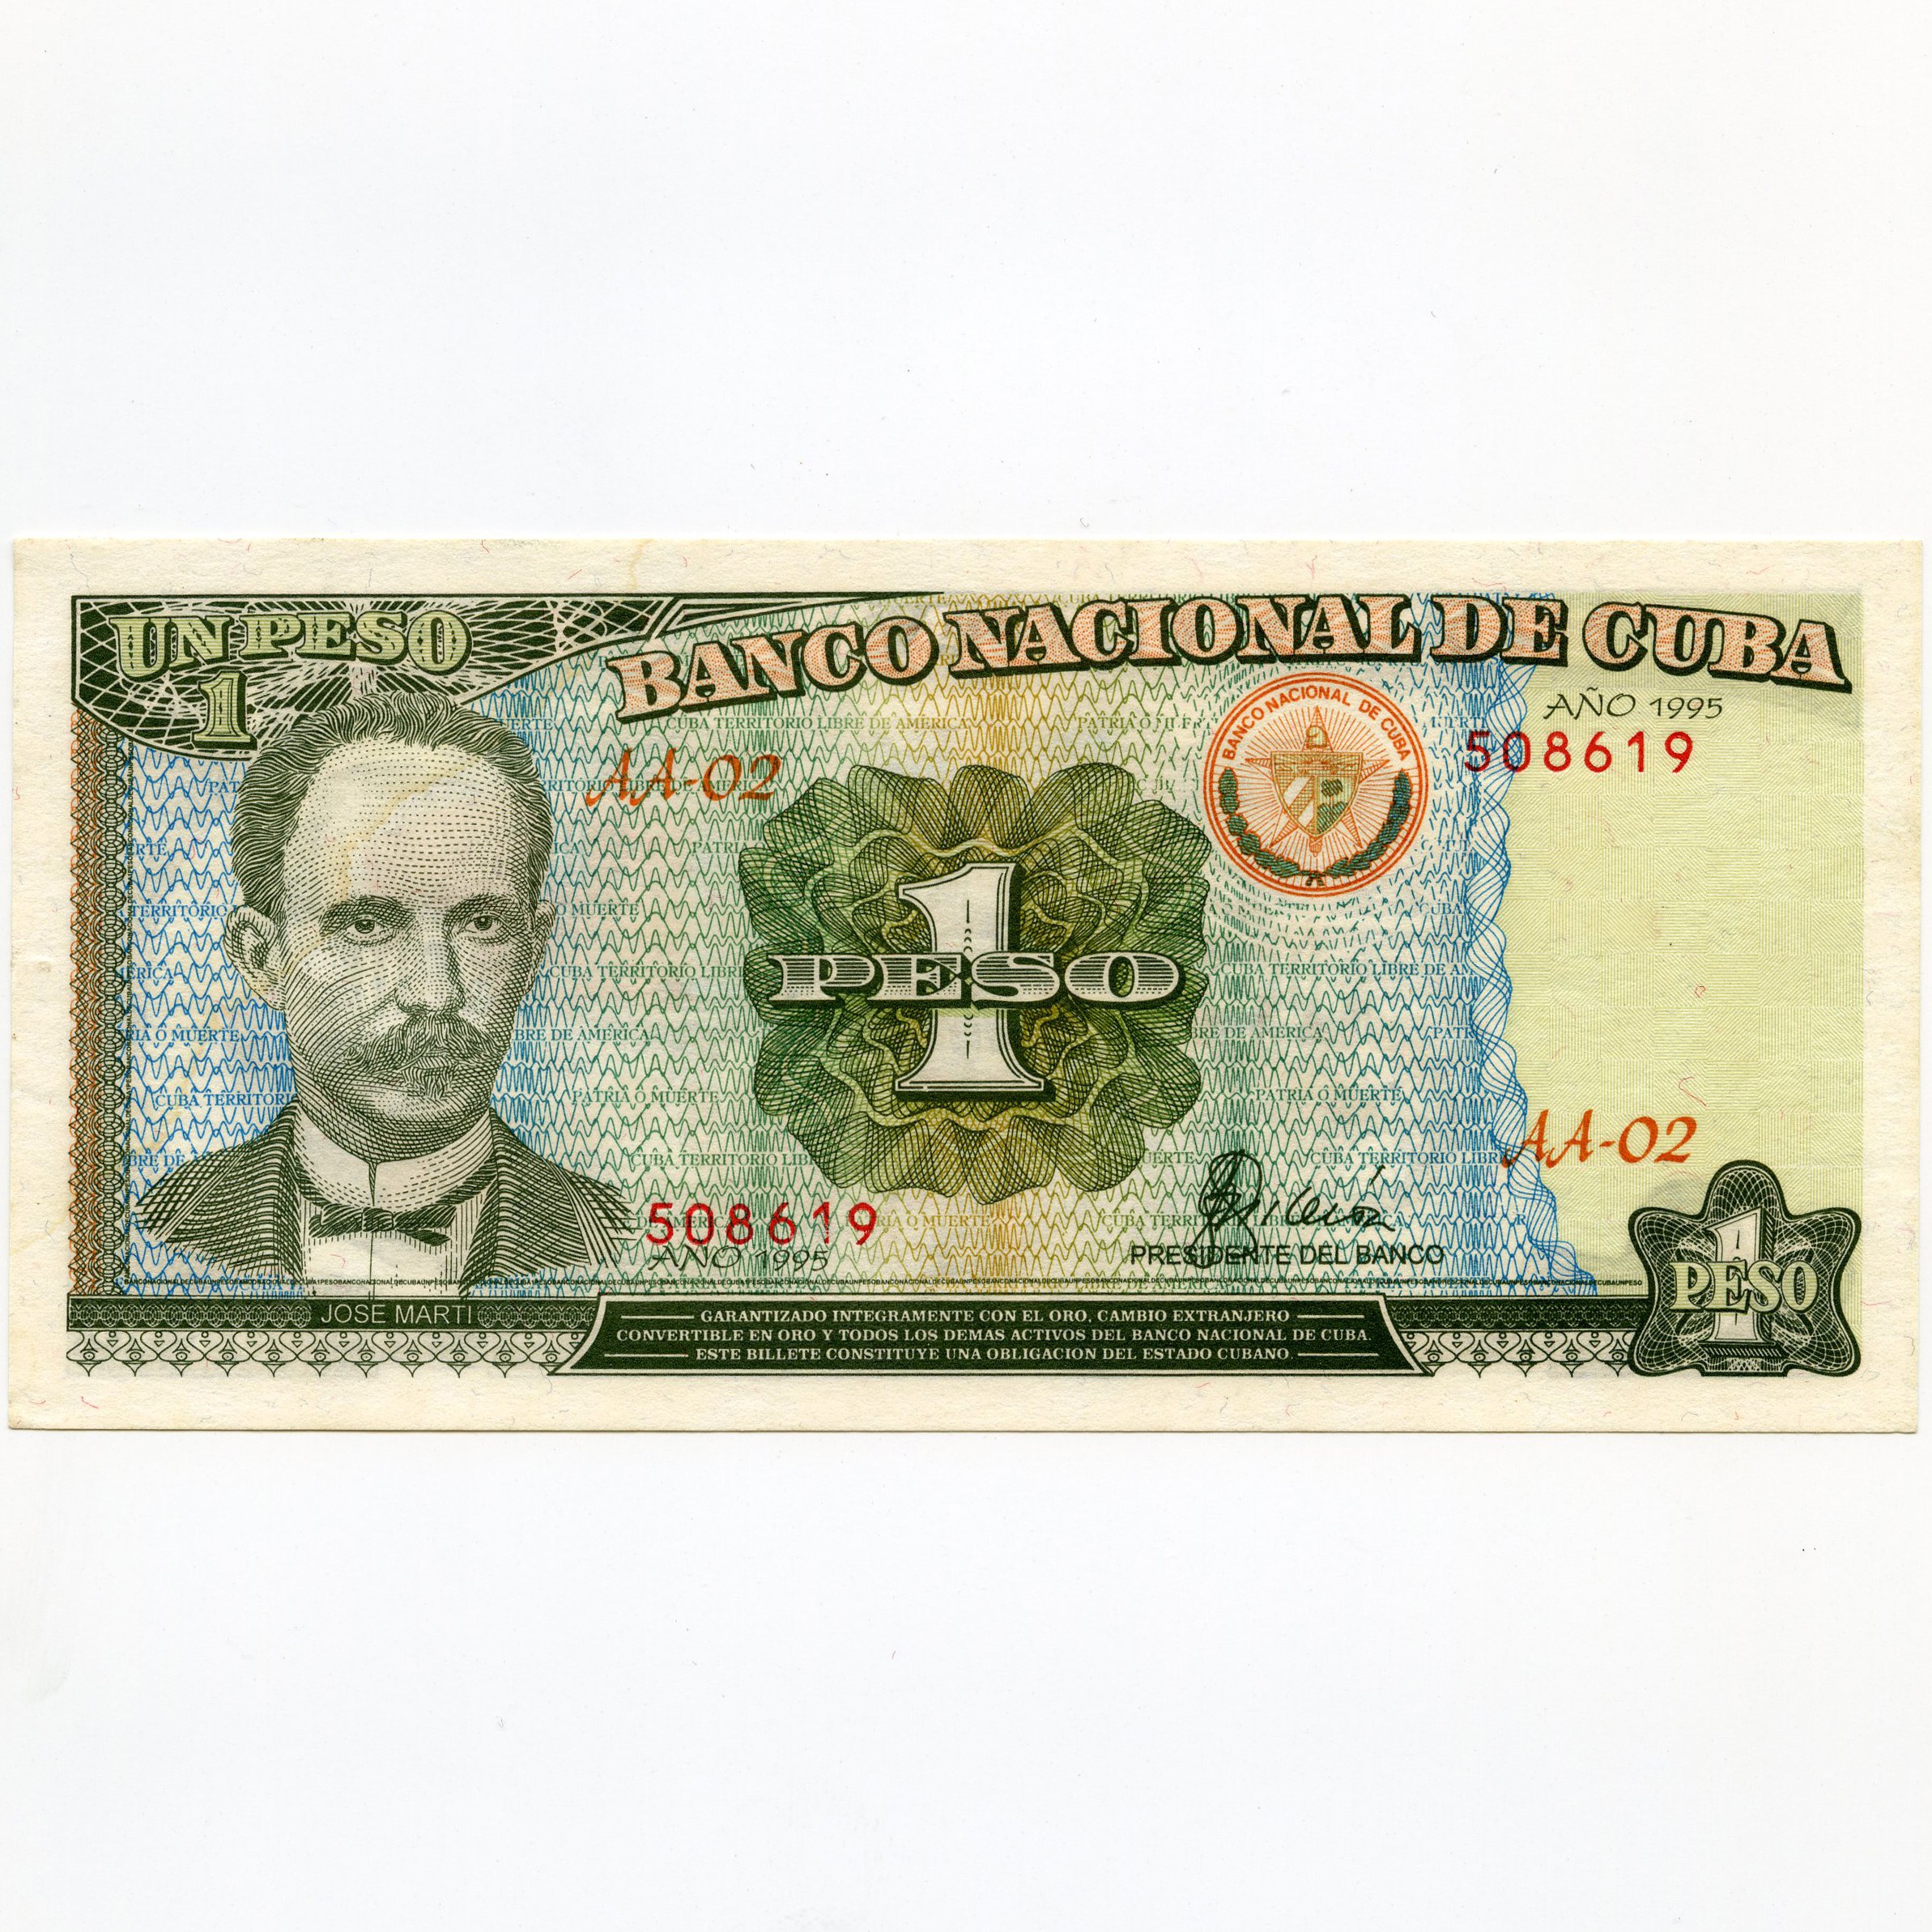 Cuba - 1 Peso - AA-02 508619 avers